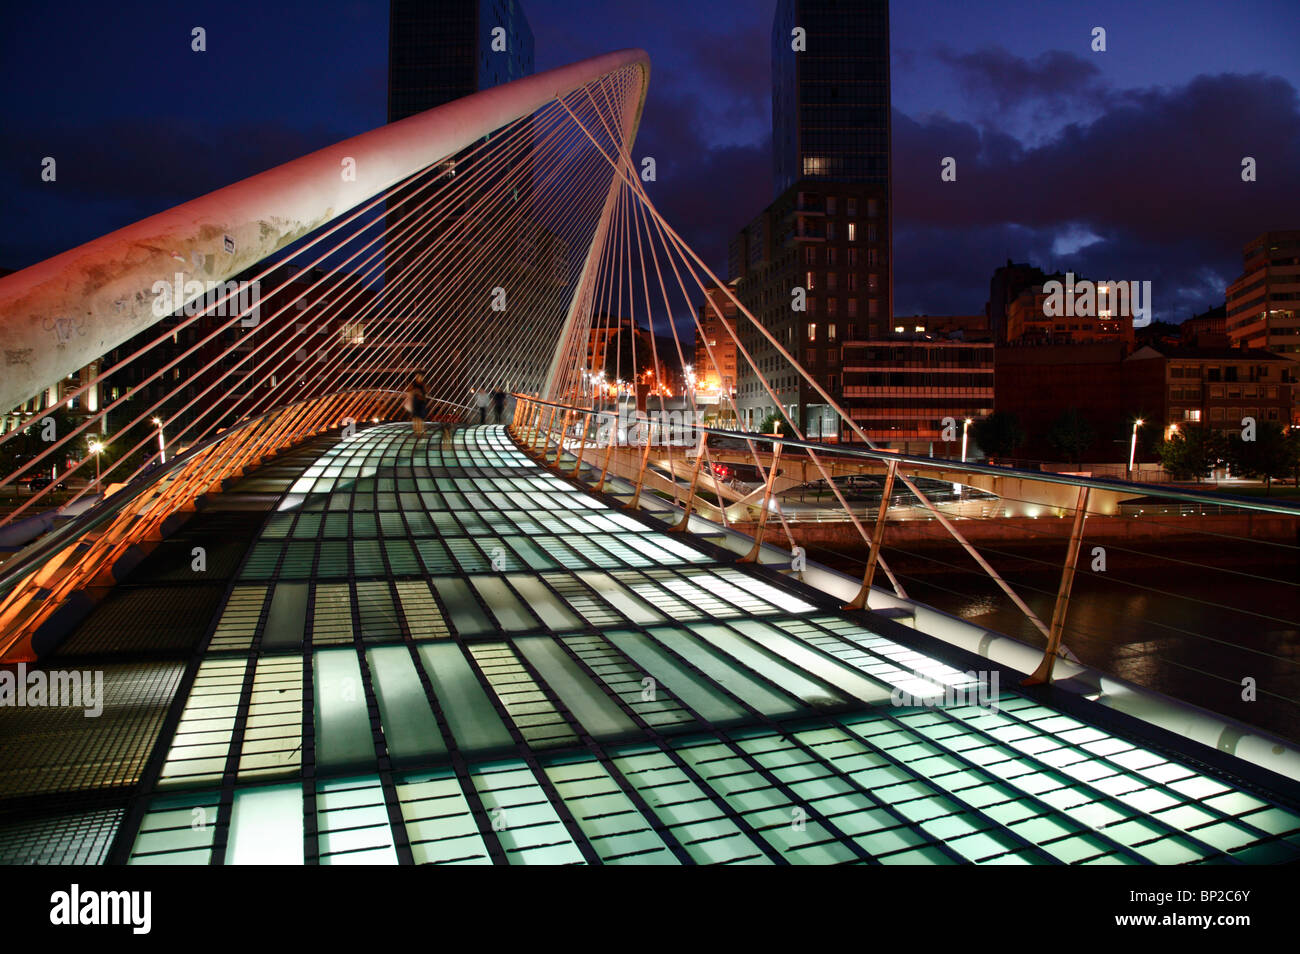 Imagen nocturna del Puente Zubizuri cruzando el río Nervión en Bilbao, España. Foto de stock